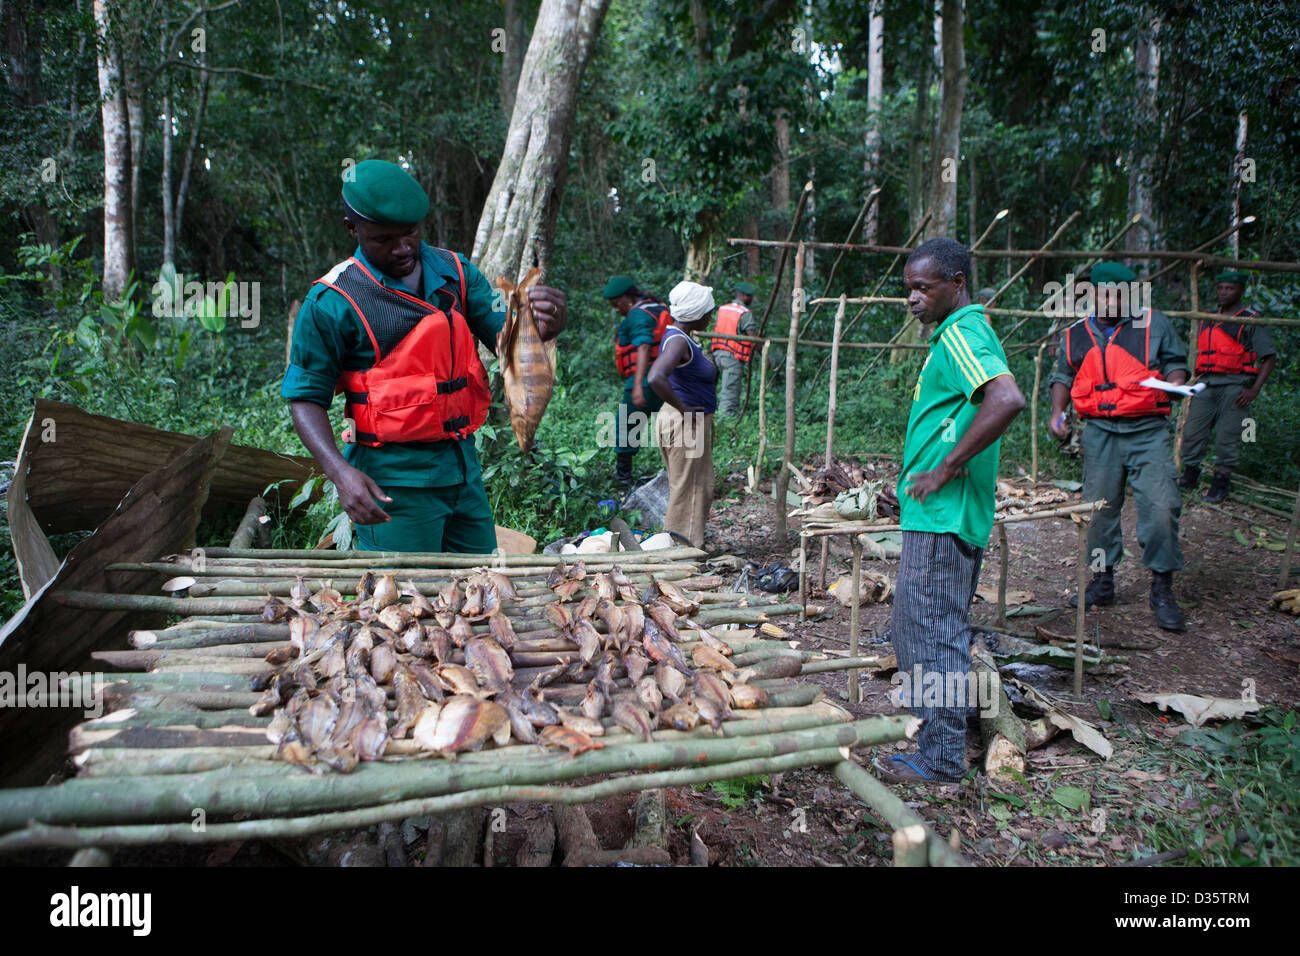 Kongo, 29. September 2012: eine Bi-nationale Gruppe von Ecoguards aus Kamerun und Gabun zerstören eine illegale Fischerei-Camp am Ufer des Flusses Dja. Stockfoto